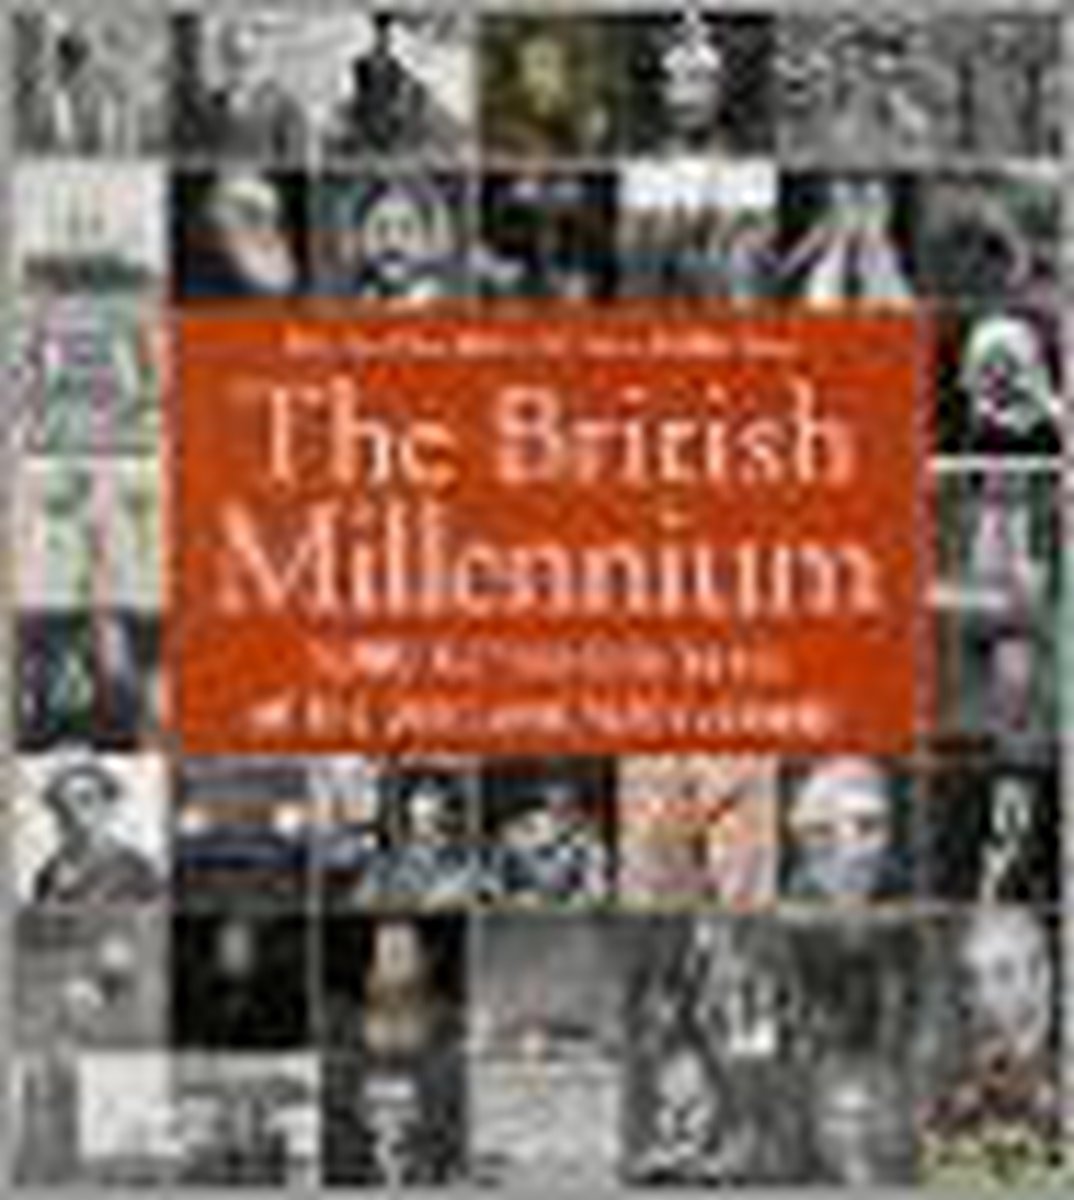 British Millennium